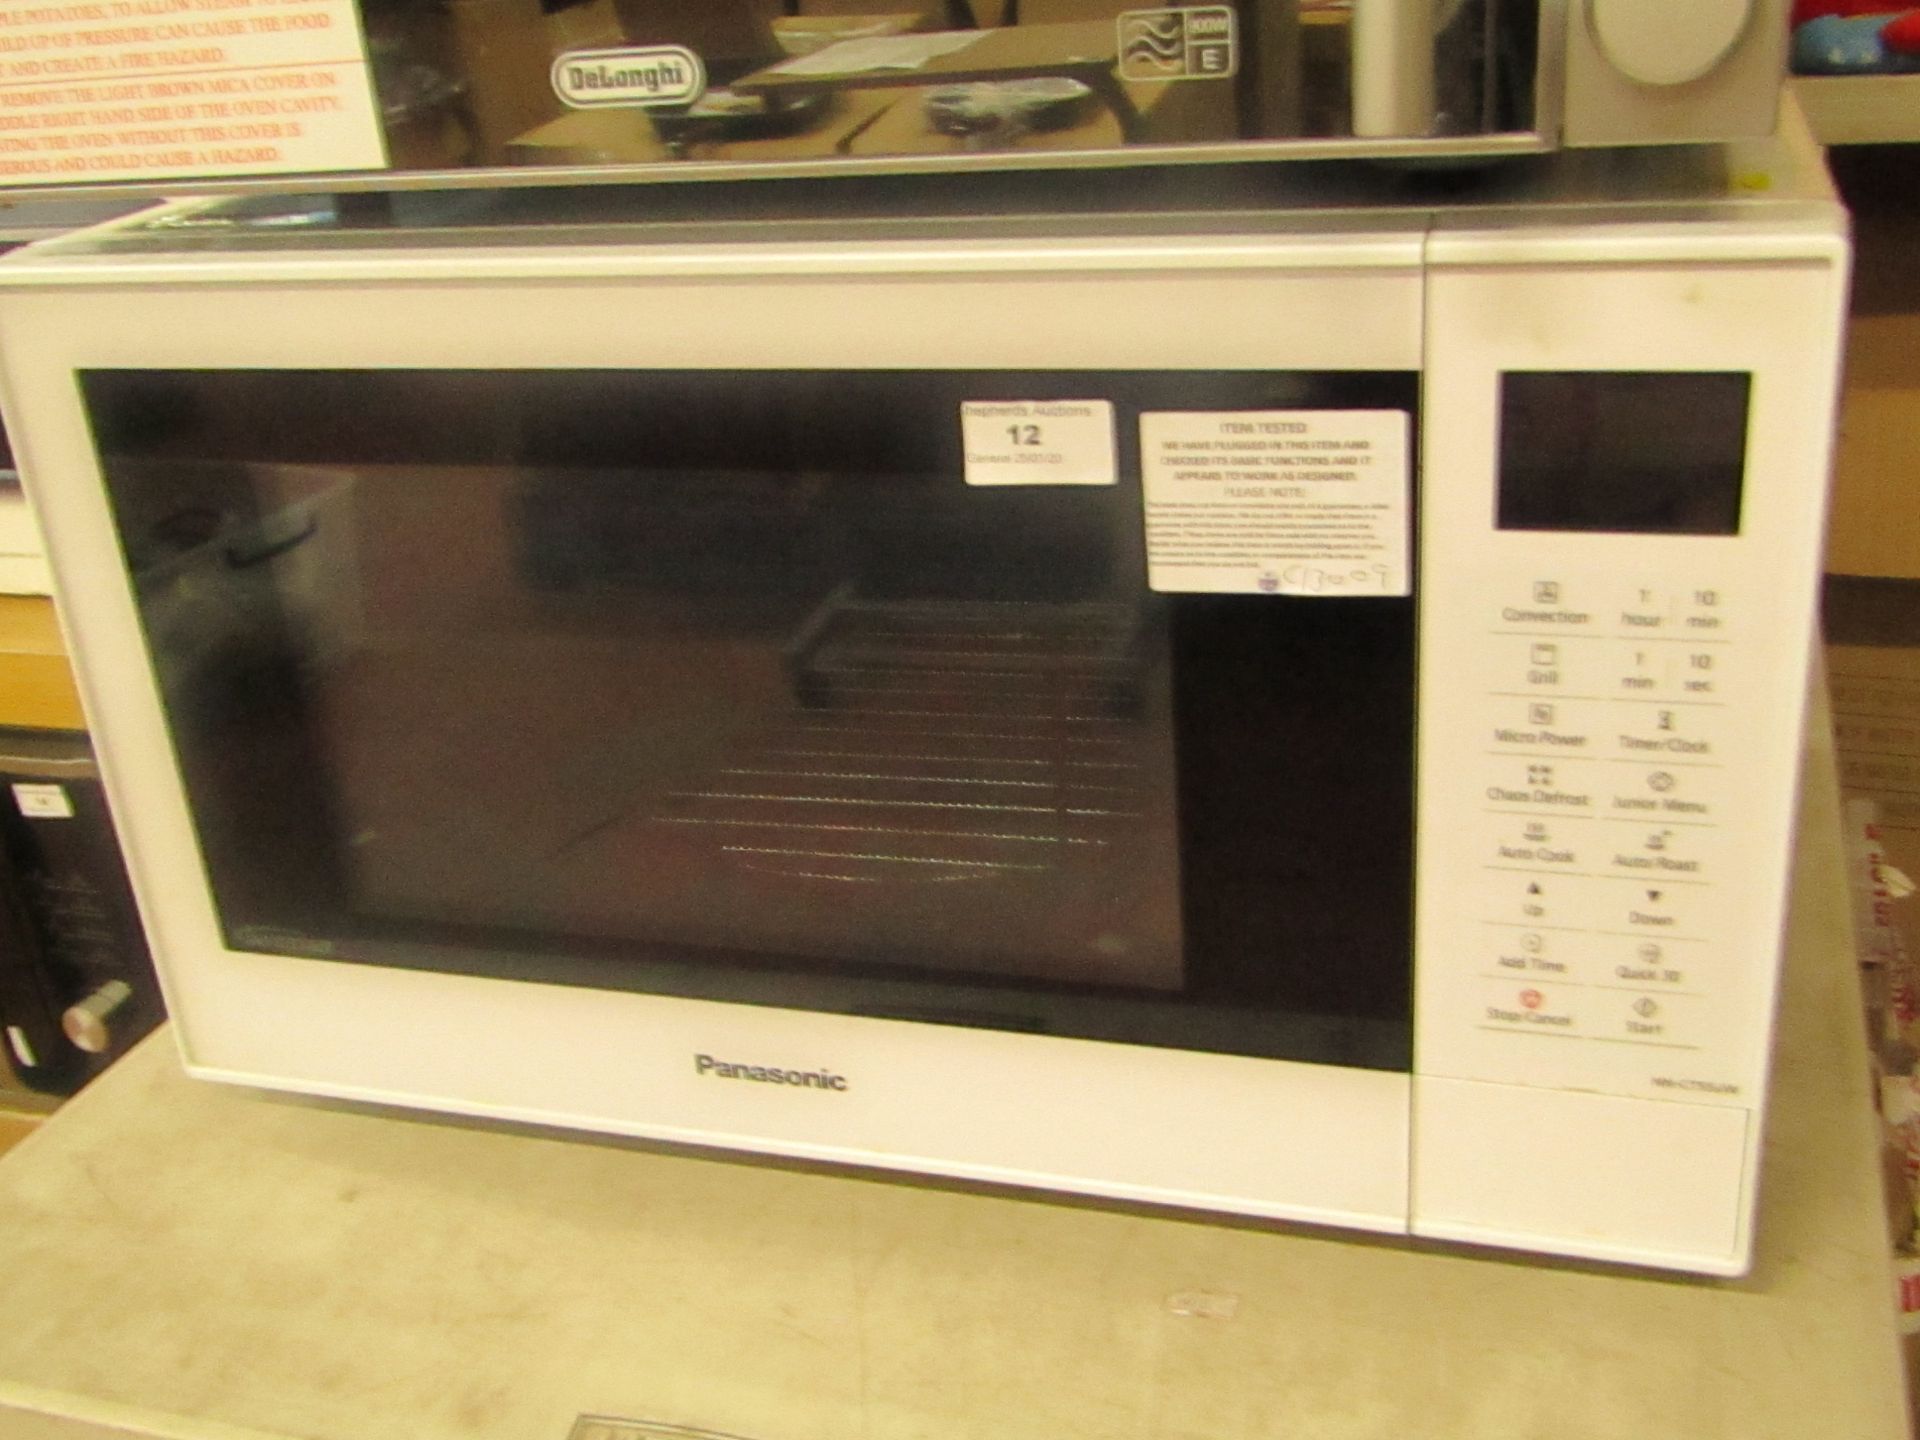 Panasonic CT55Jw Microwave Oven. Looks unused. RRP £199.99